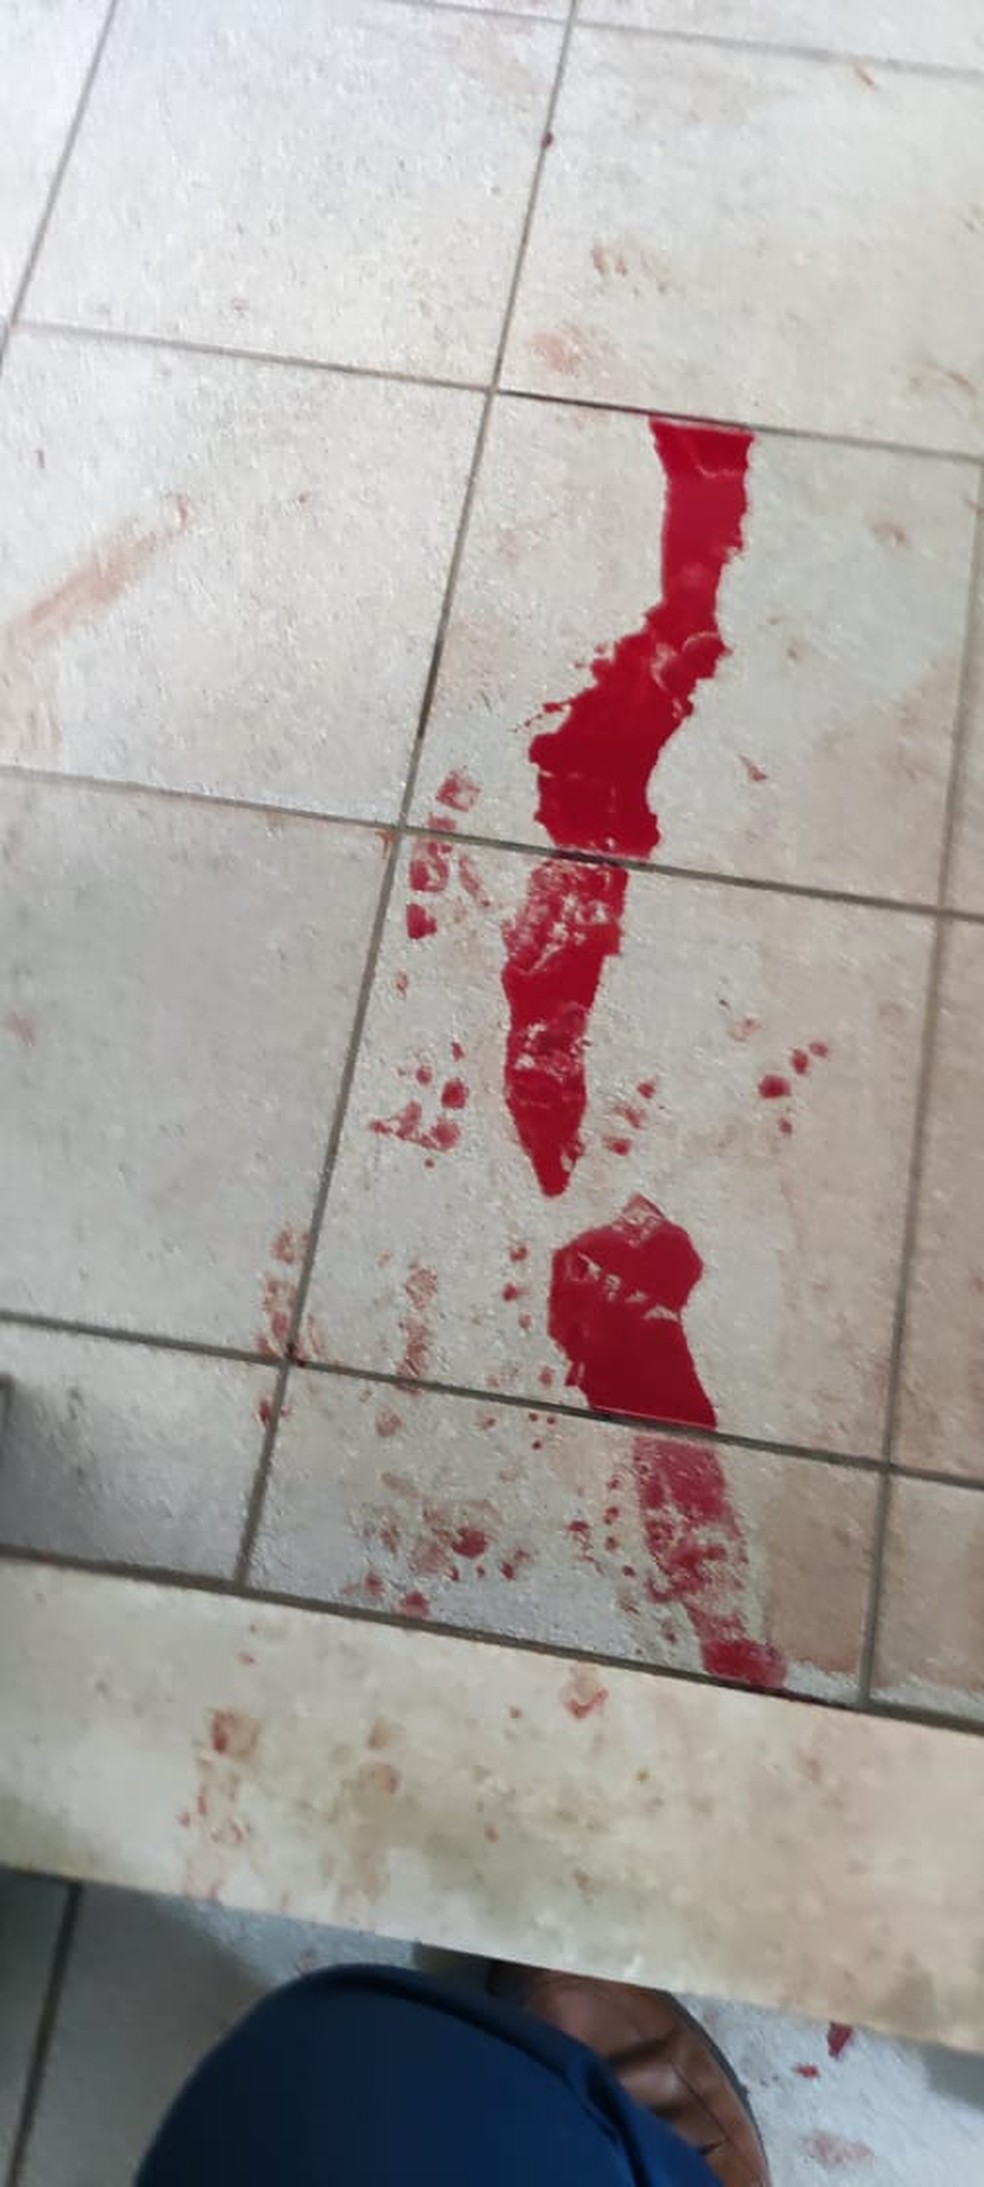 Casa de moradora do Jacarezinho ficou com rastros de sangue — Foto: Reprodução